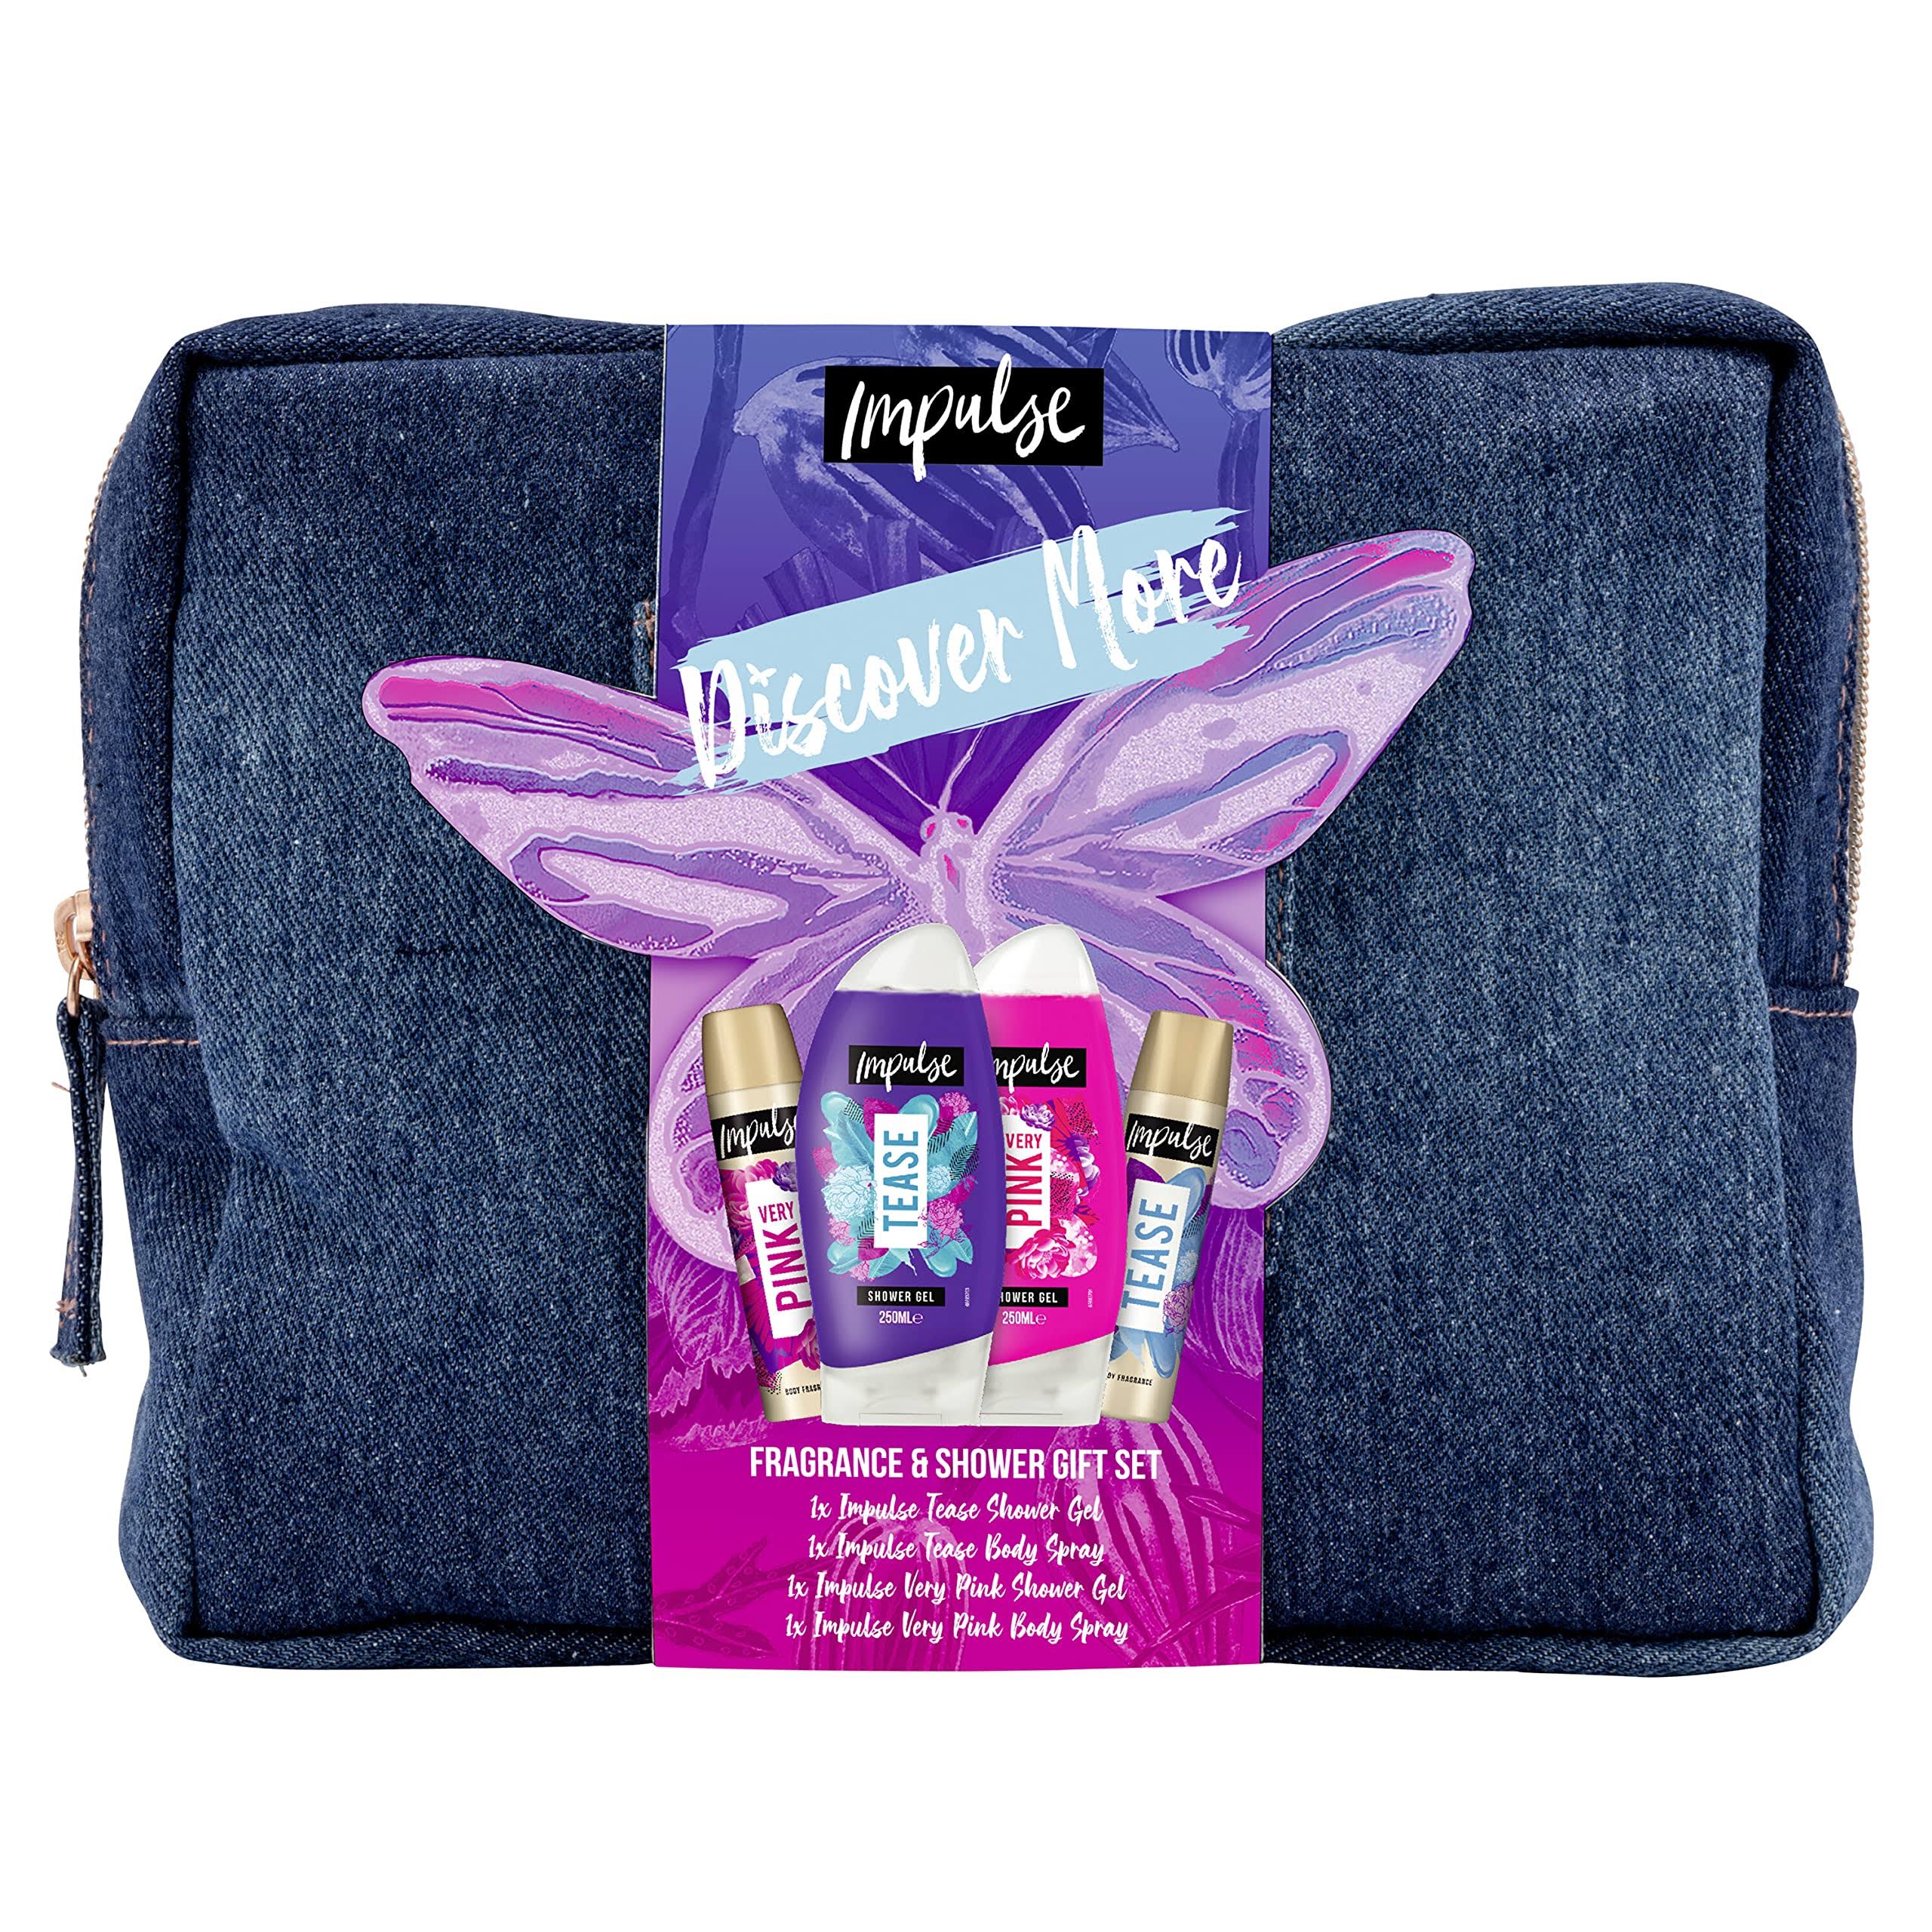 Impulse Discover More Beauty Bag Gift Set